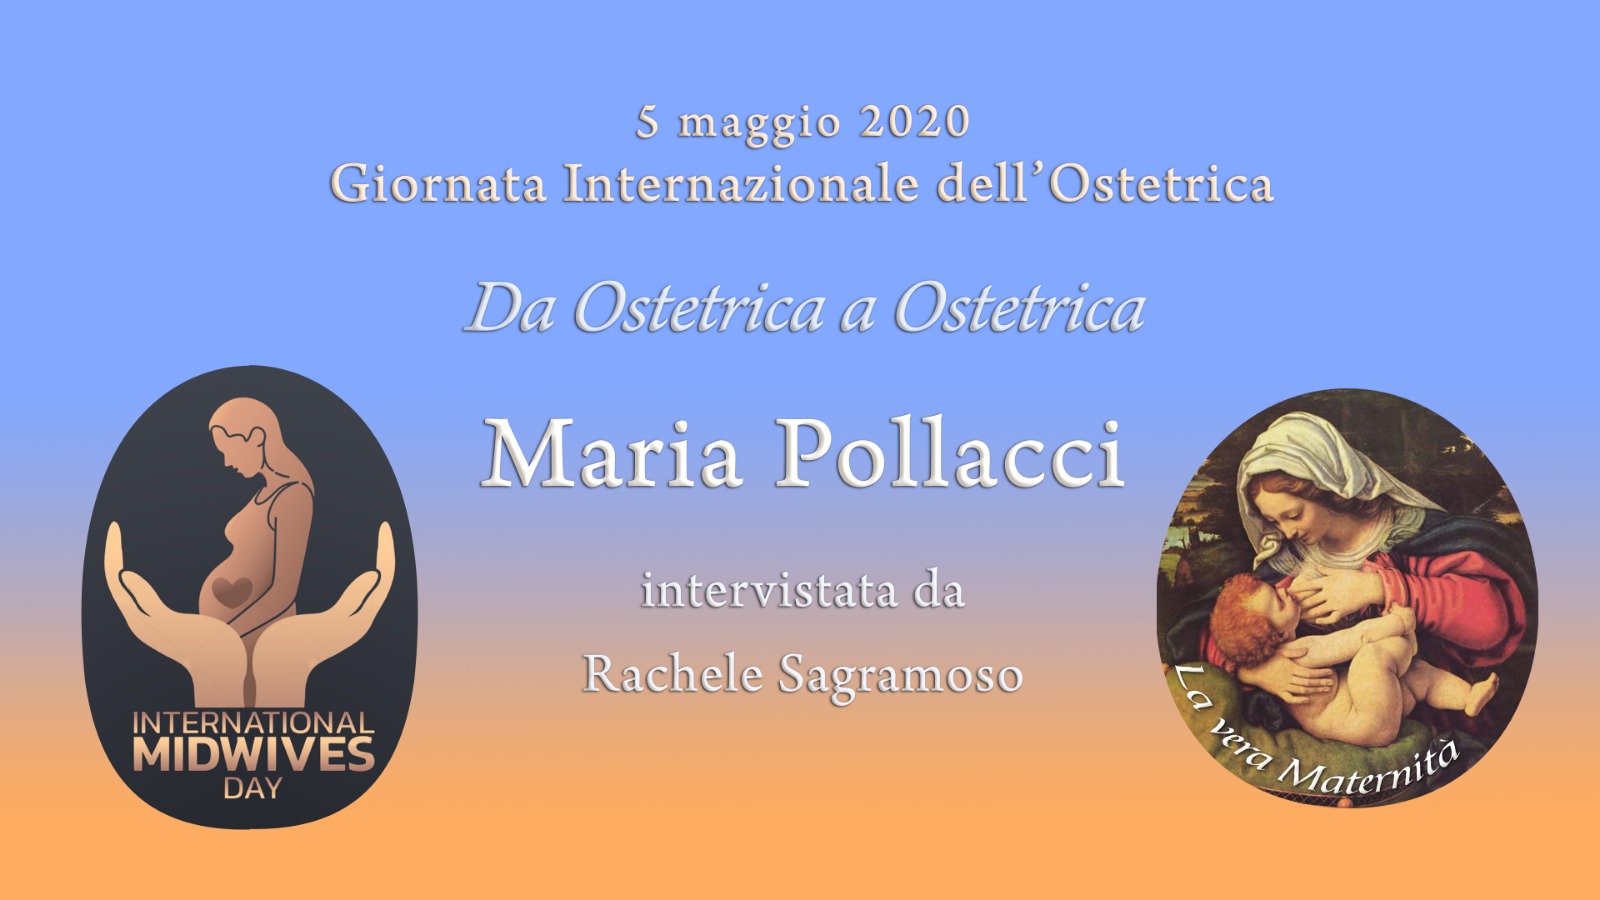 Videointervista all'Ostetrica Maria Pollacci